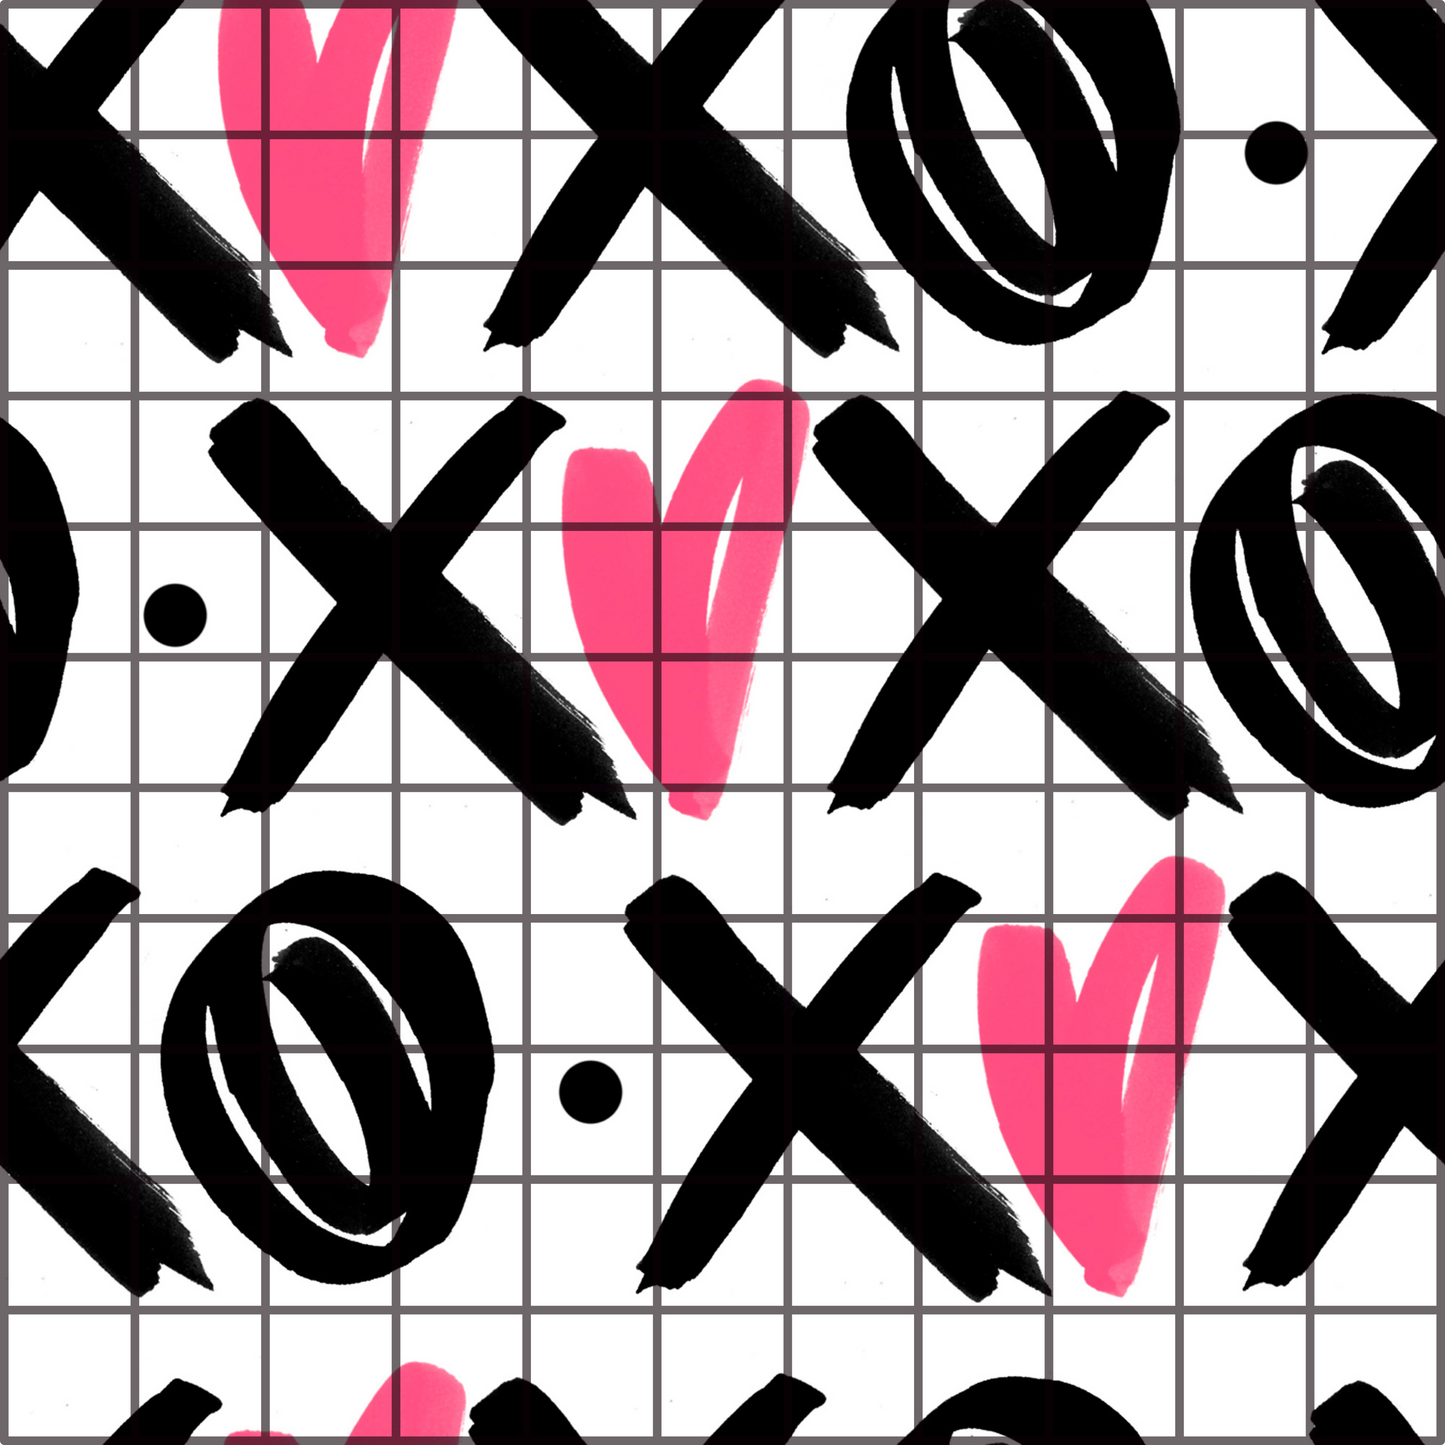 XOXO - Opaque Vinyl Sheet